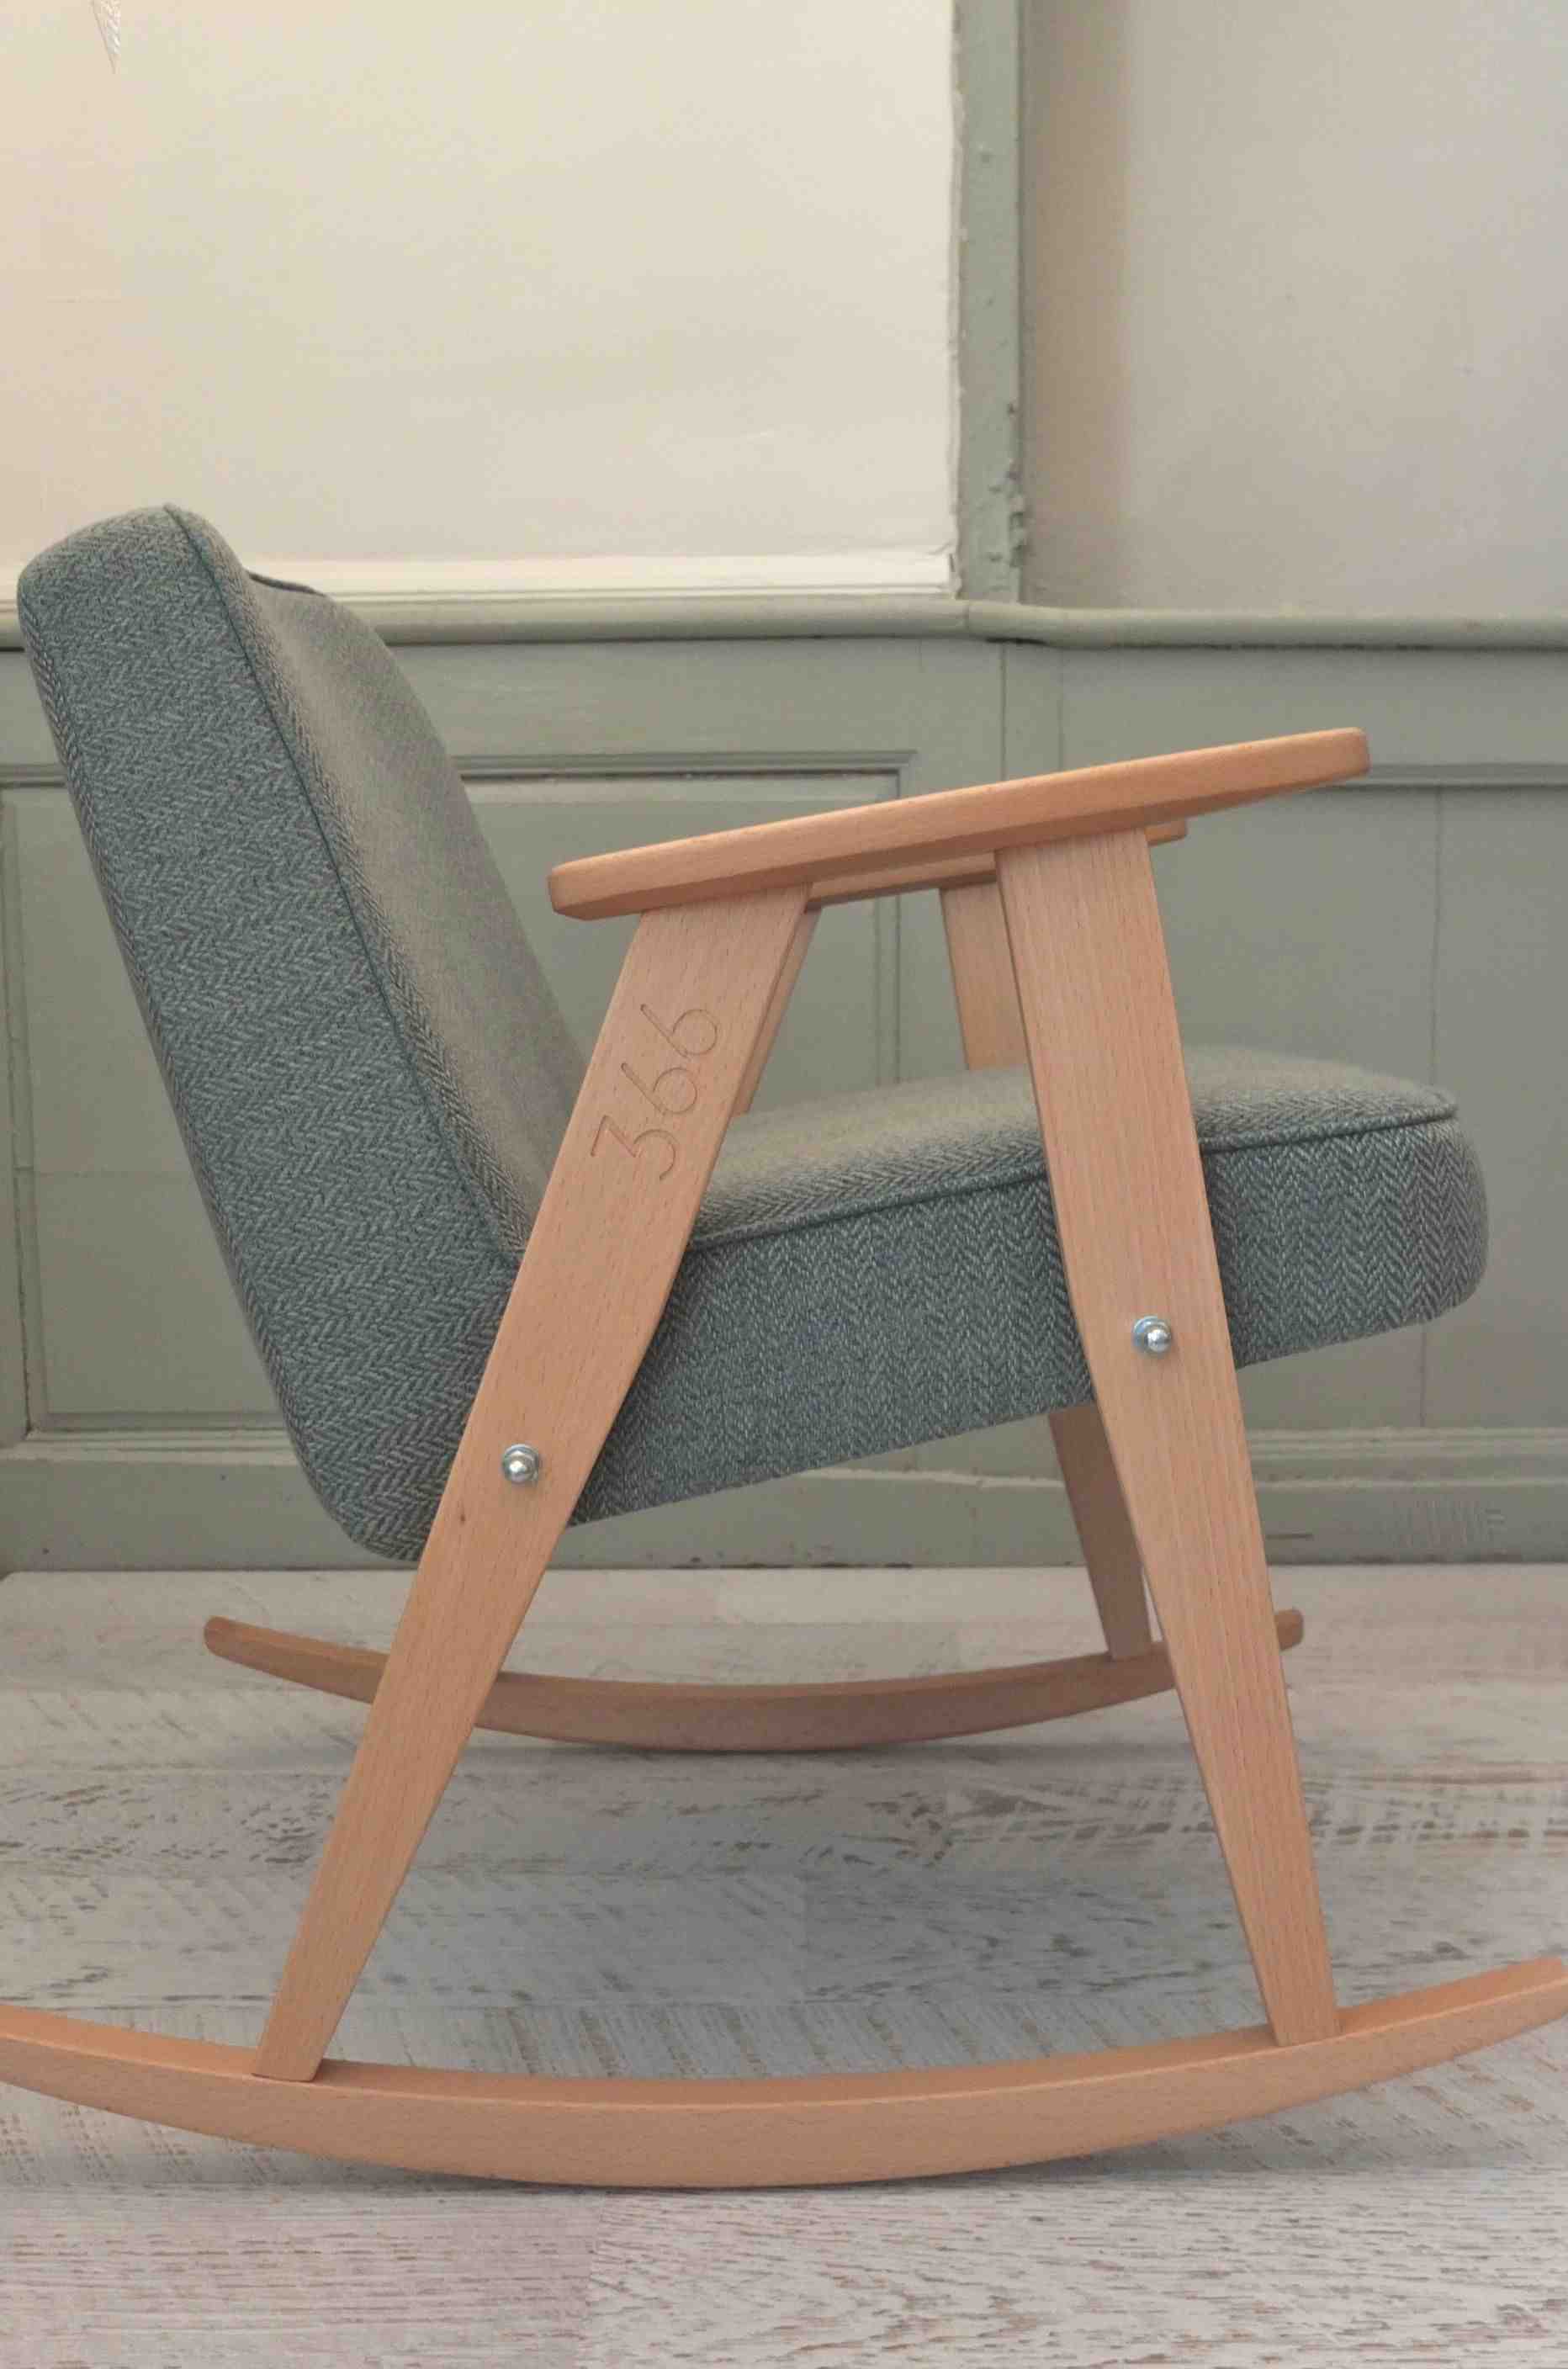 design polonais 366 concept rocking chair 366 jozef Chierowski 12